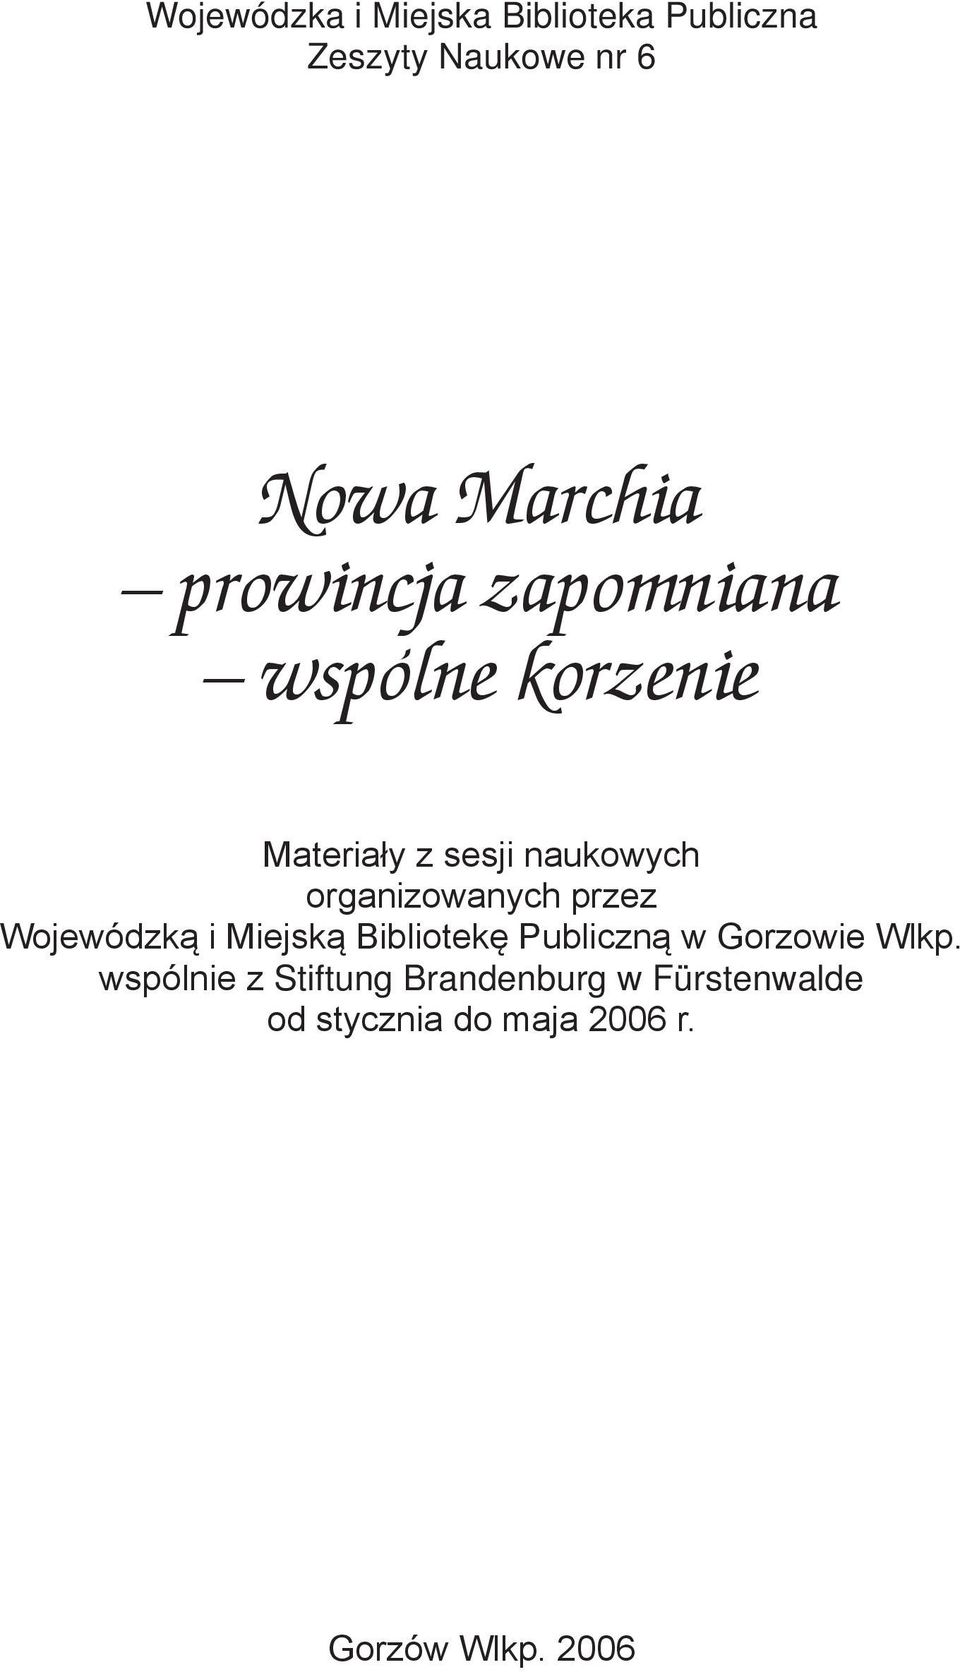 organizowanych przez Wojewódzką i Miejską Bibliotekę Publiczną w Gorzowie Wlkp.